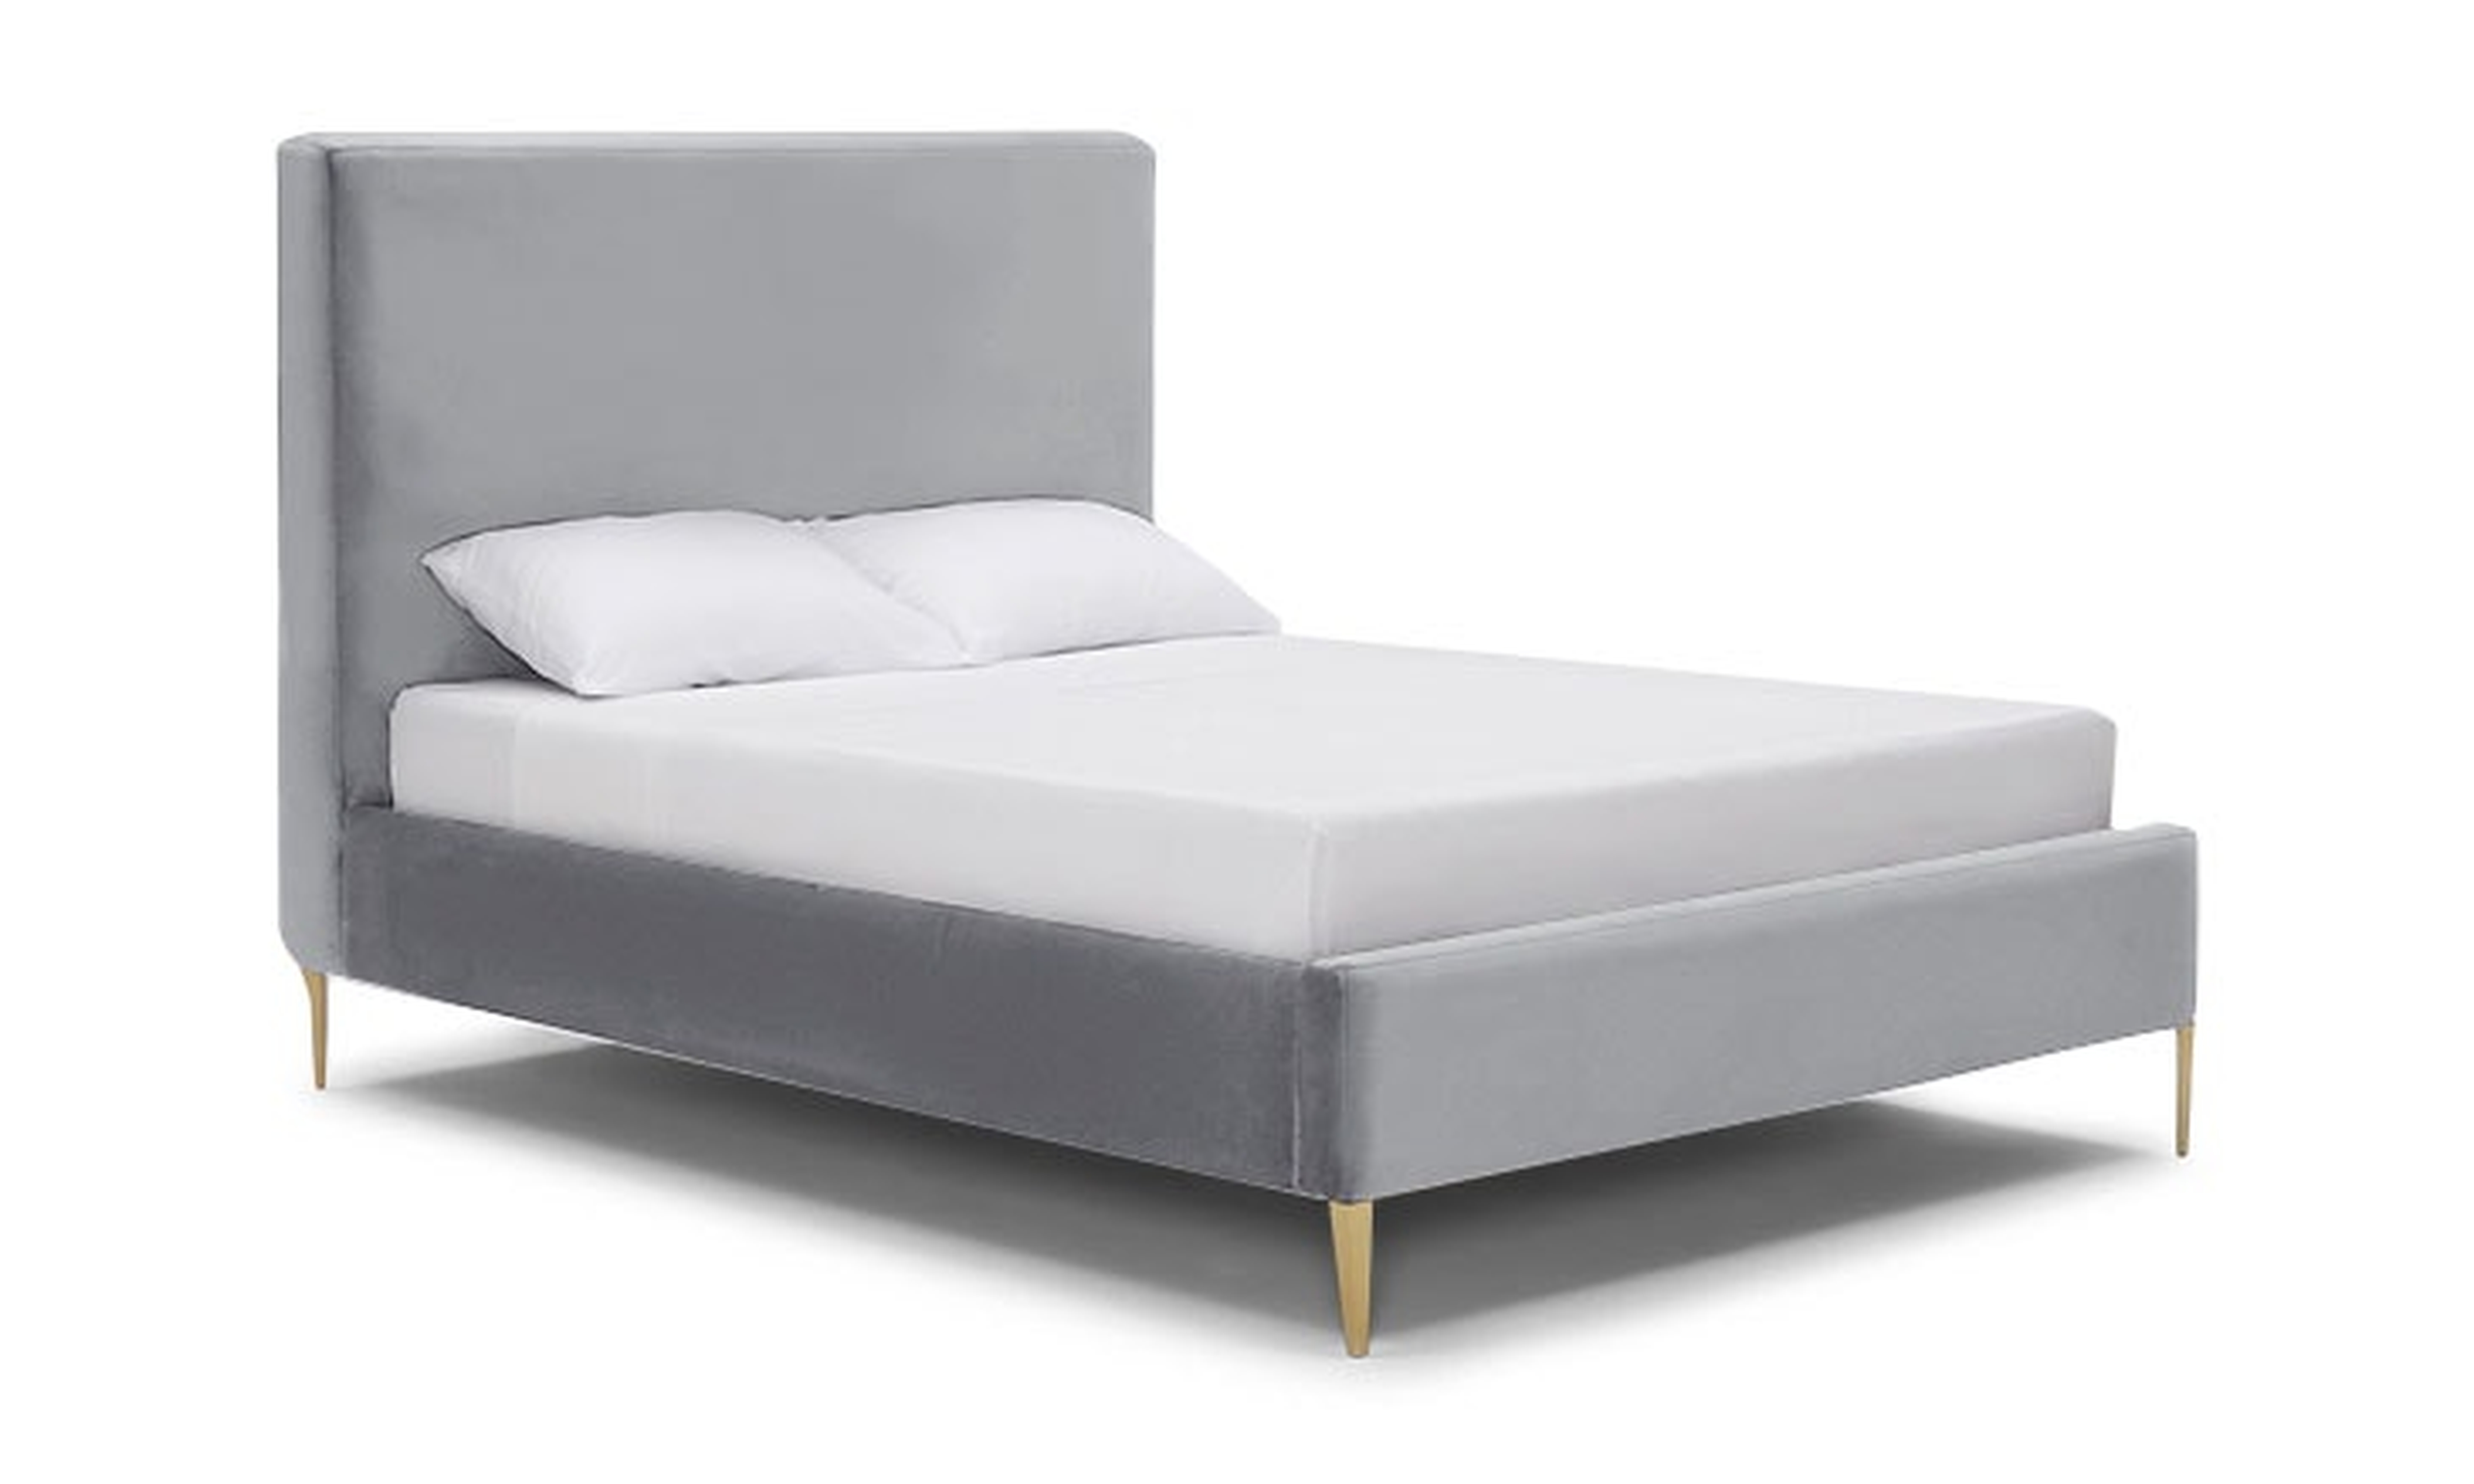 Gray Oliff Mid Century Modern Bed - Essence Ash - Eastern King - Joybird